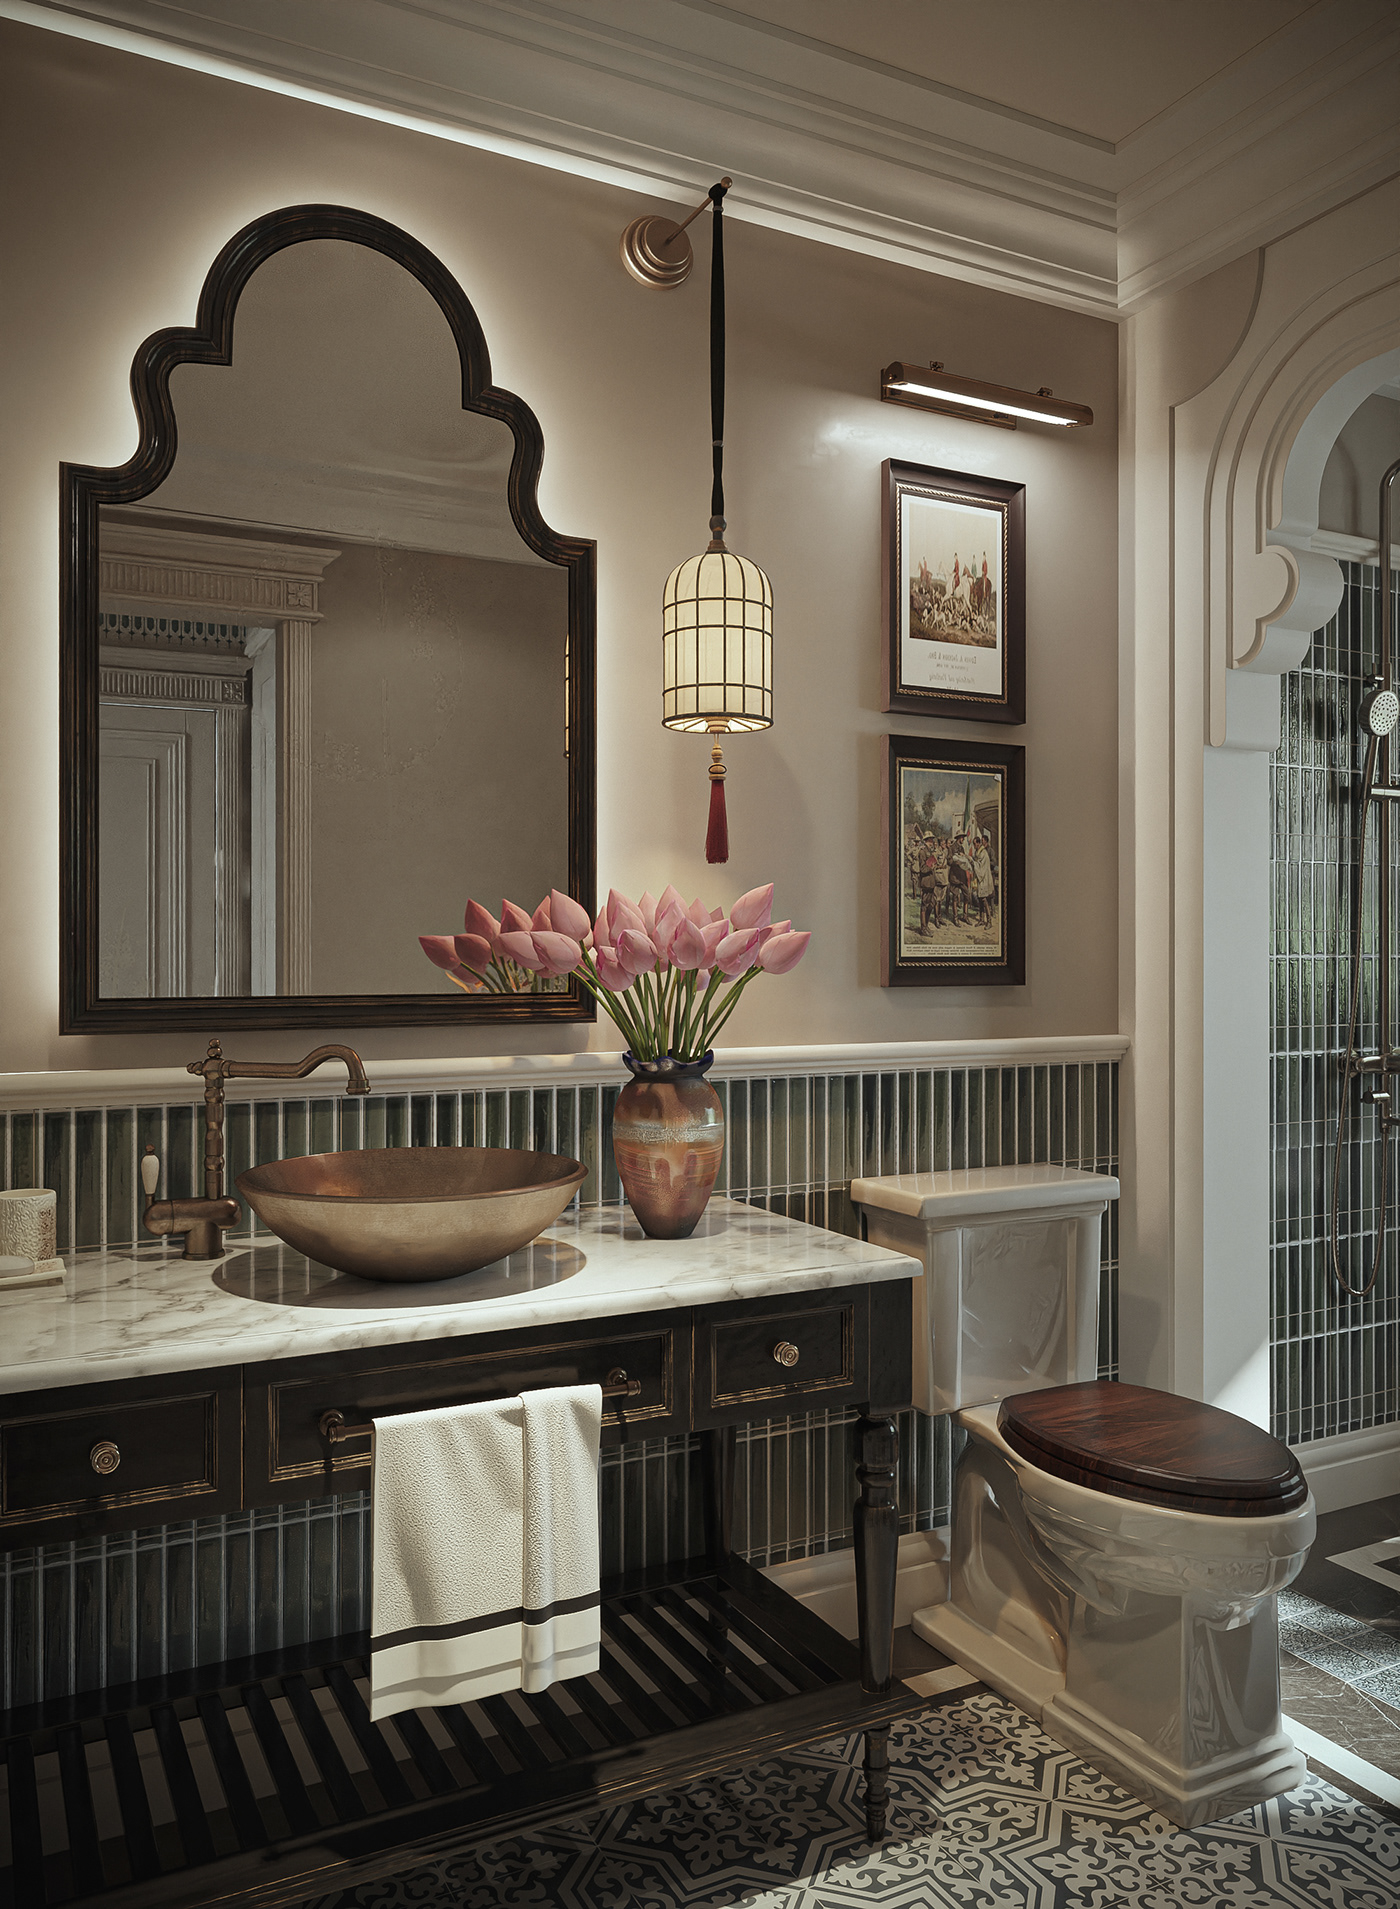 3ds max corona render  Behance indochine Indochine interior master bedroom design chinoiserie vietnam Villa